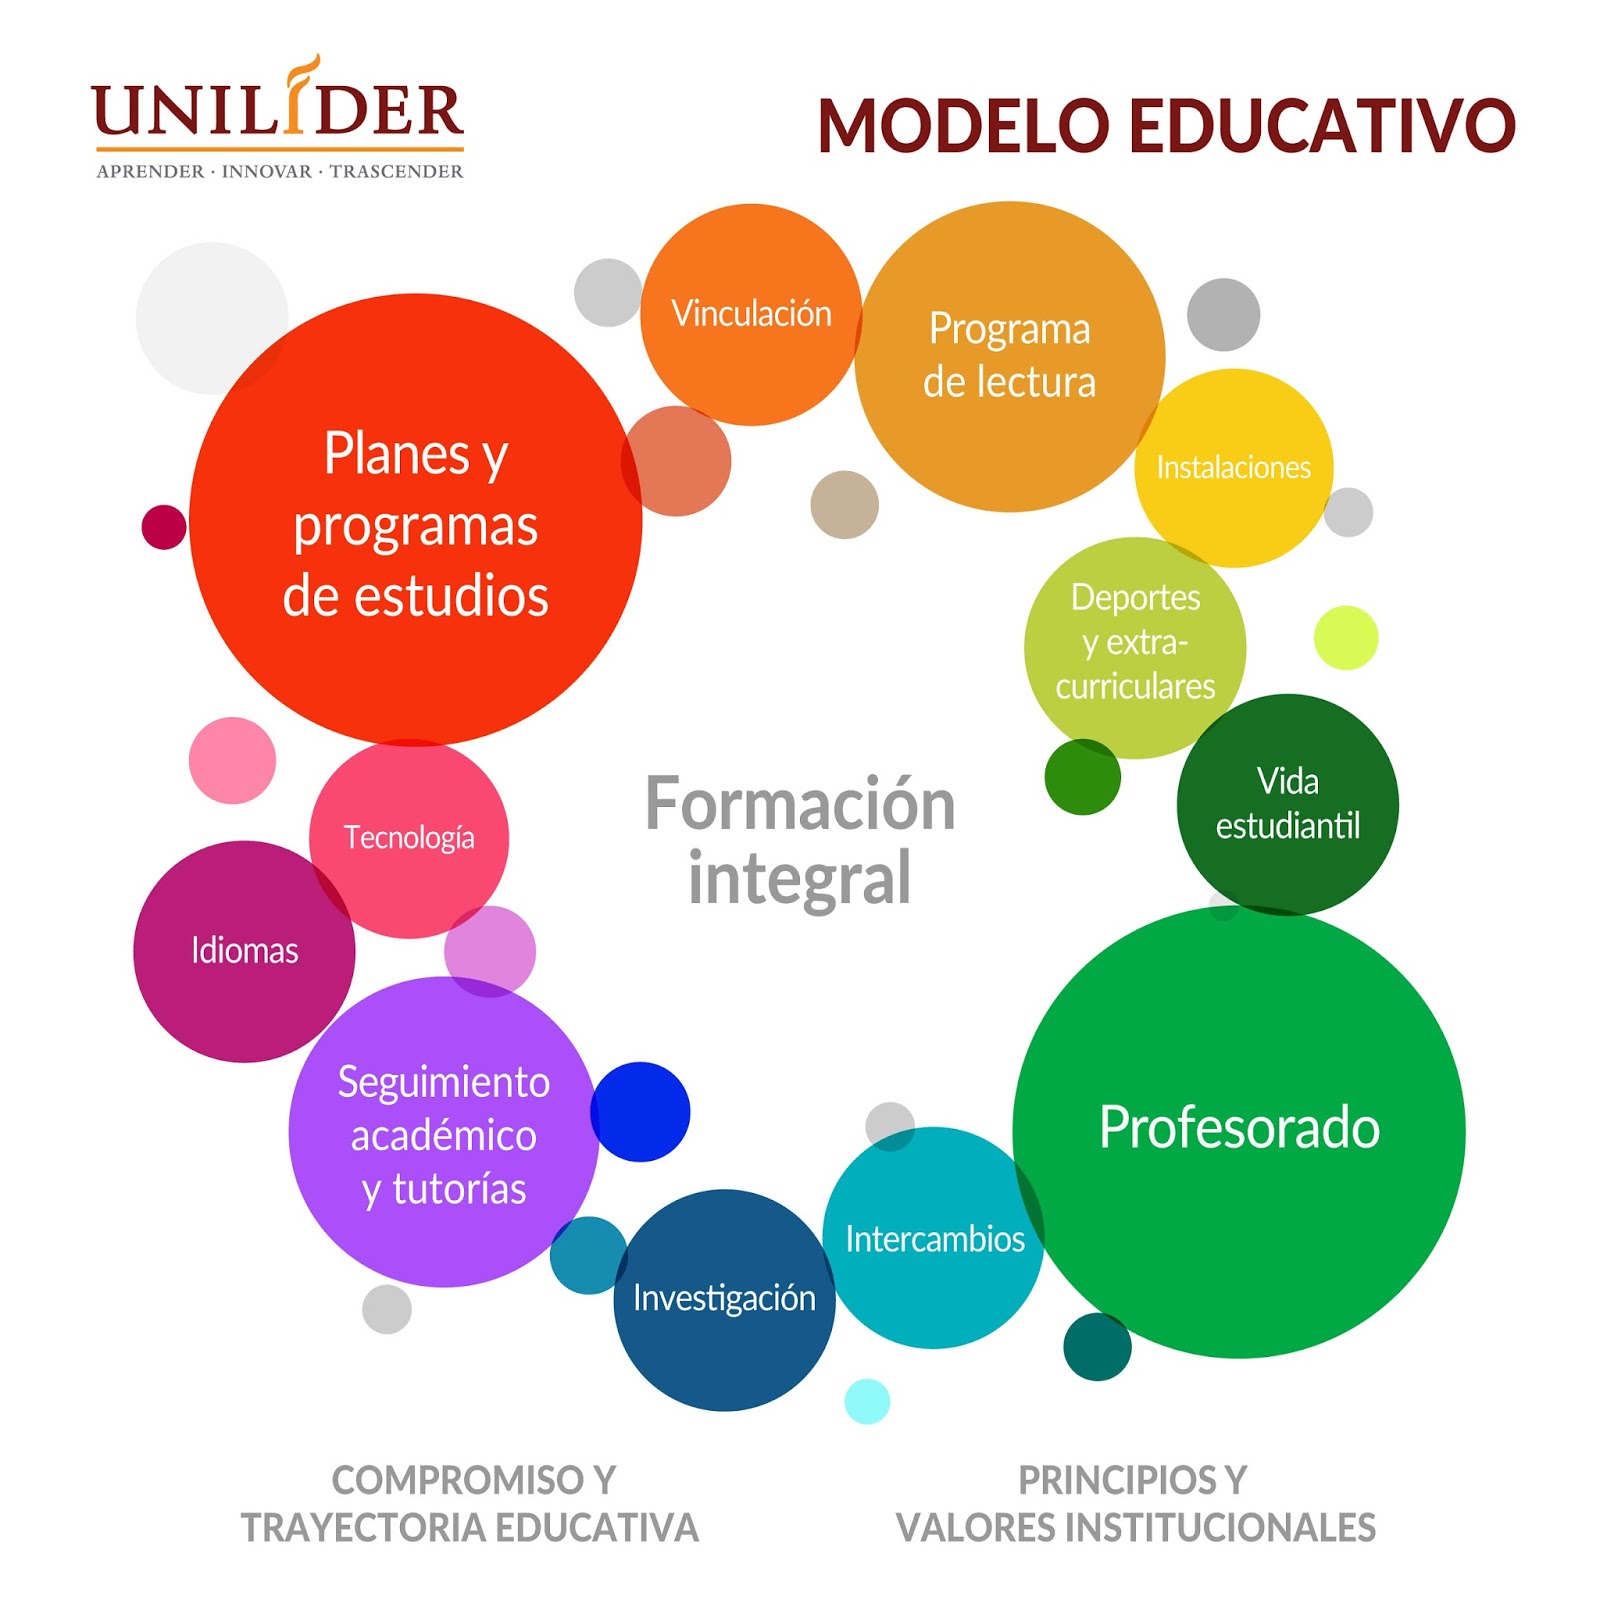 En Que Consiste El Nuevo Modelo Educativo 2018 Noticias Modelo Reverasite